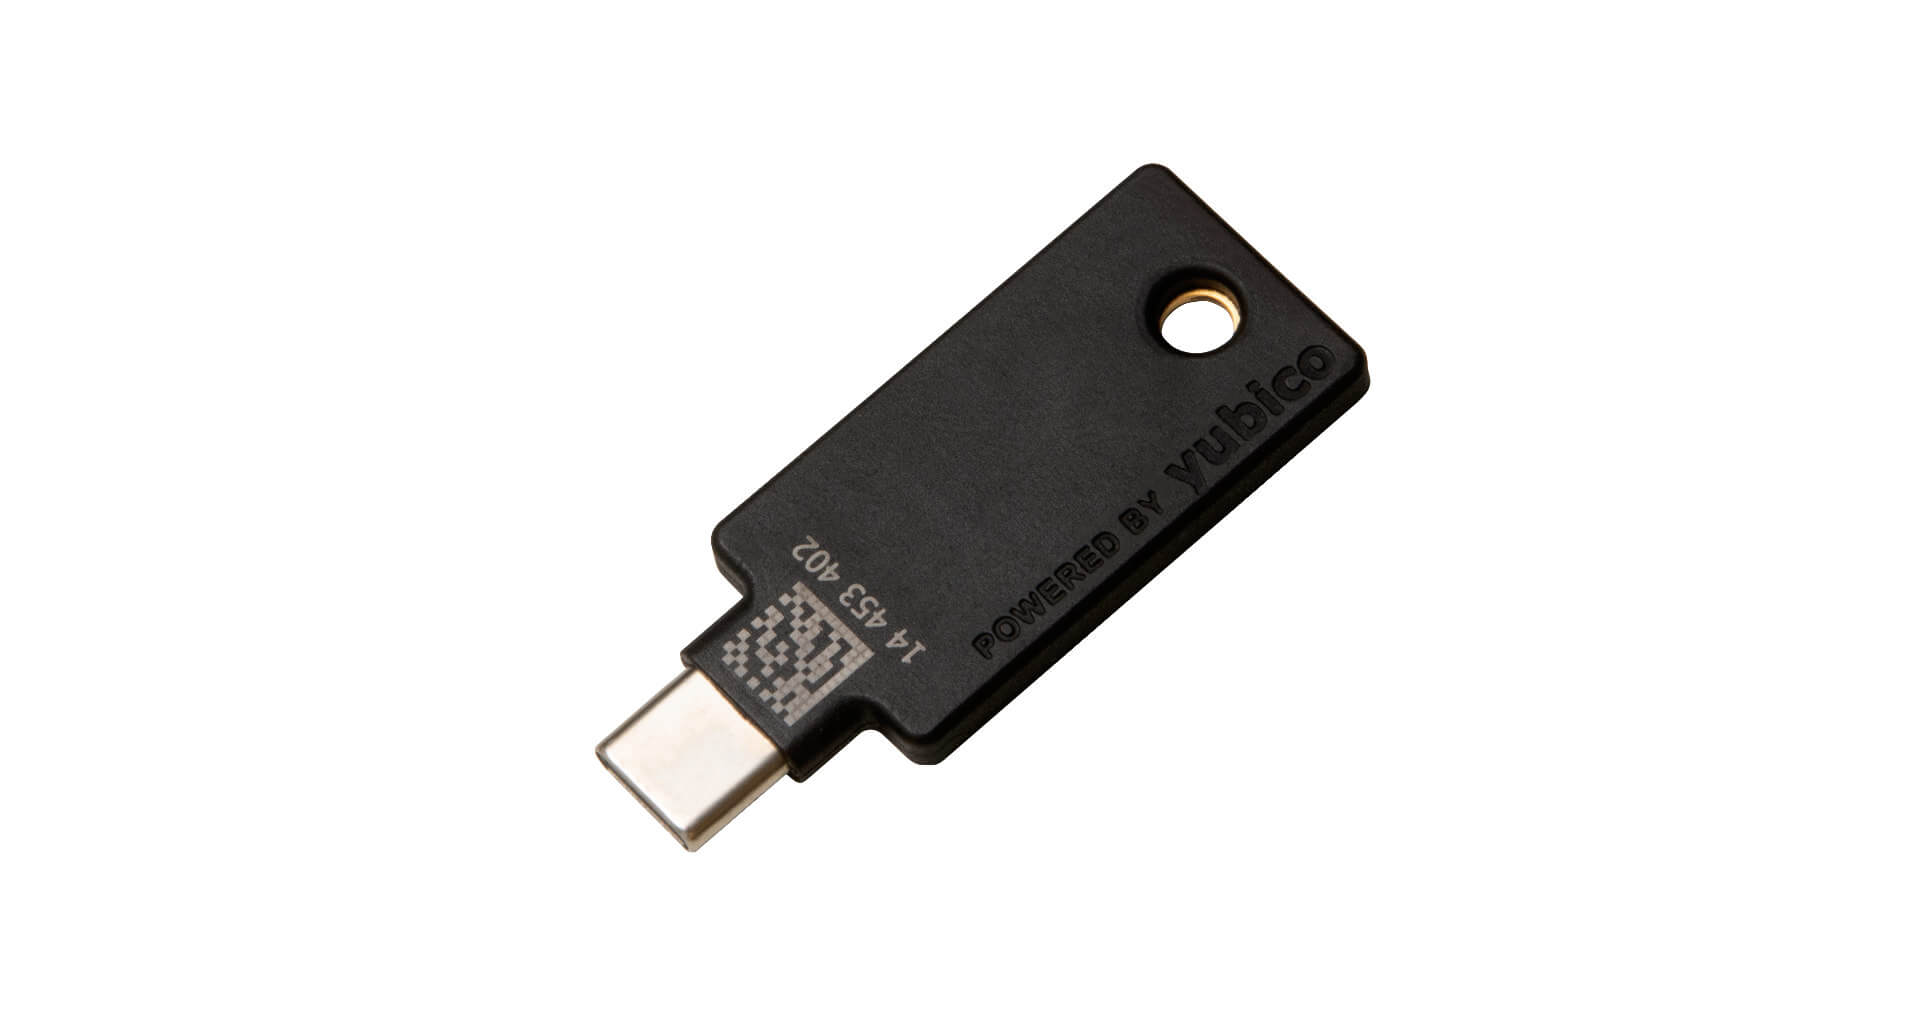 YubiKey 5C NFC (OTP + U2F + CCID)